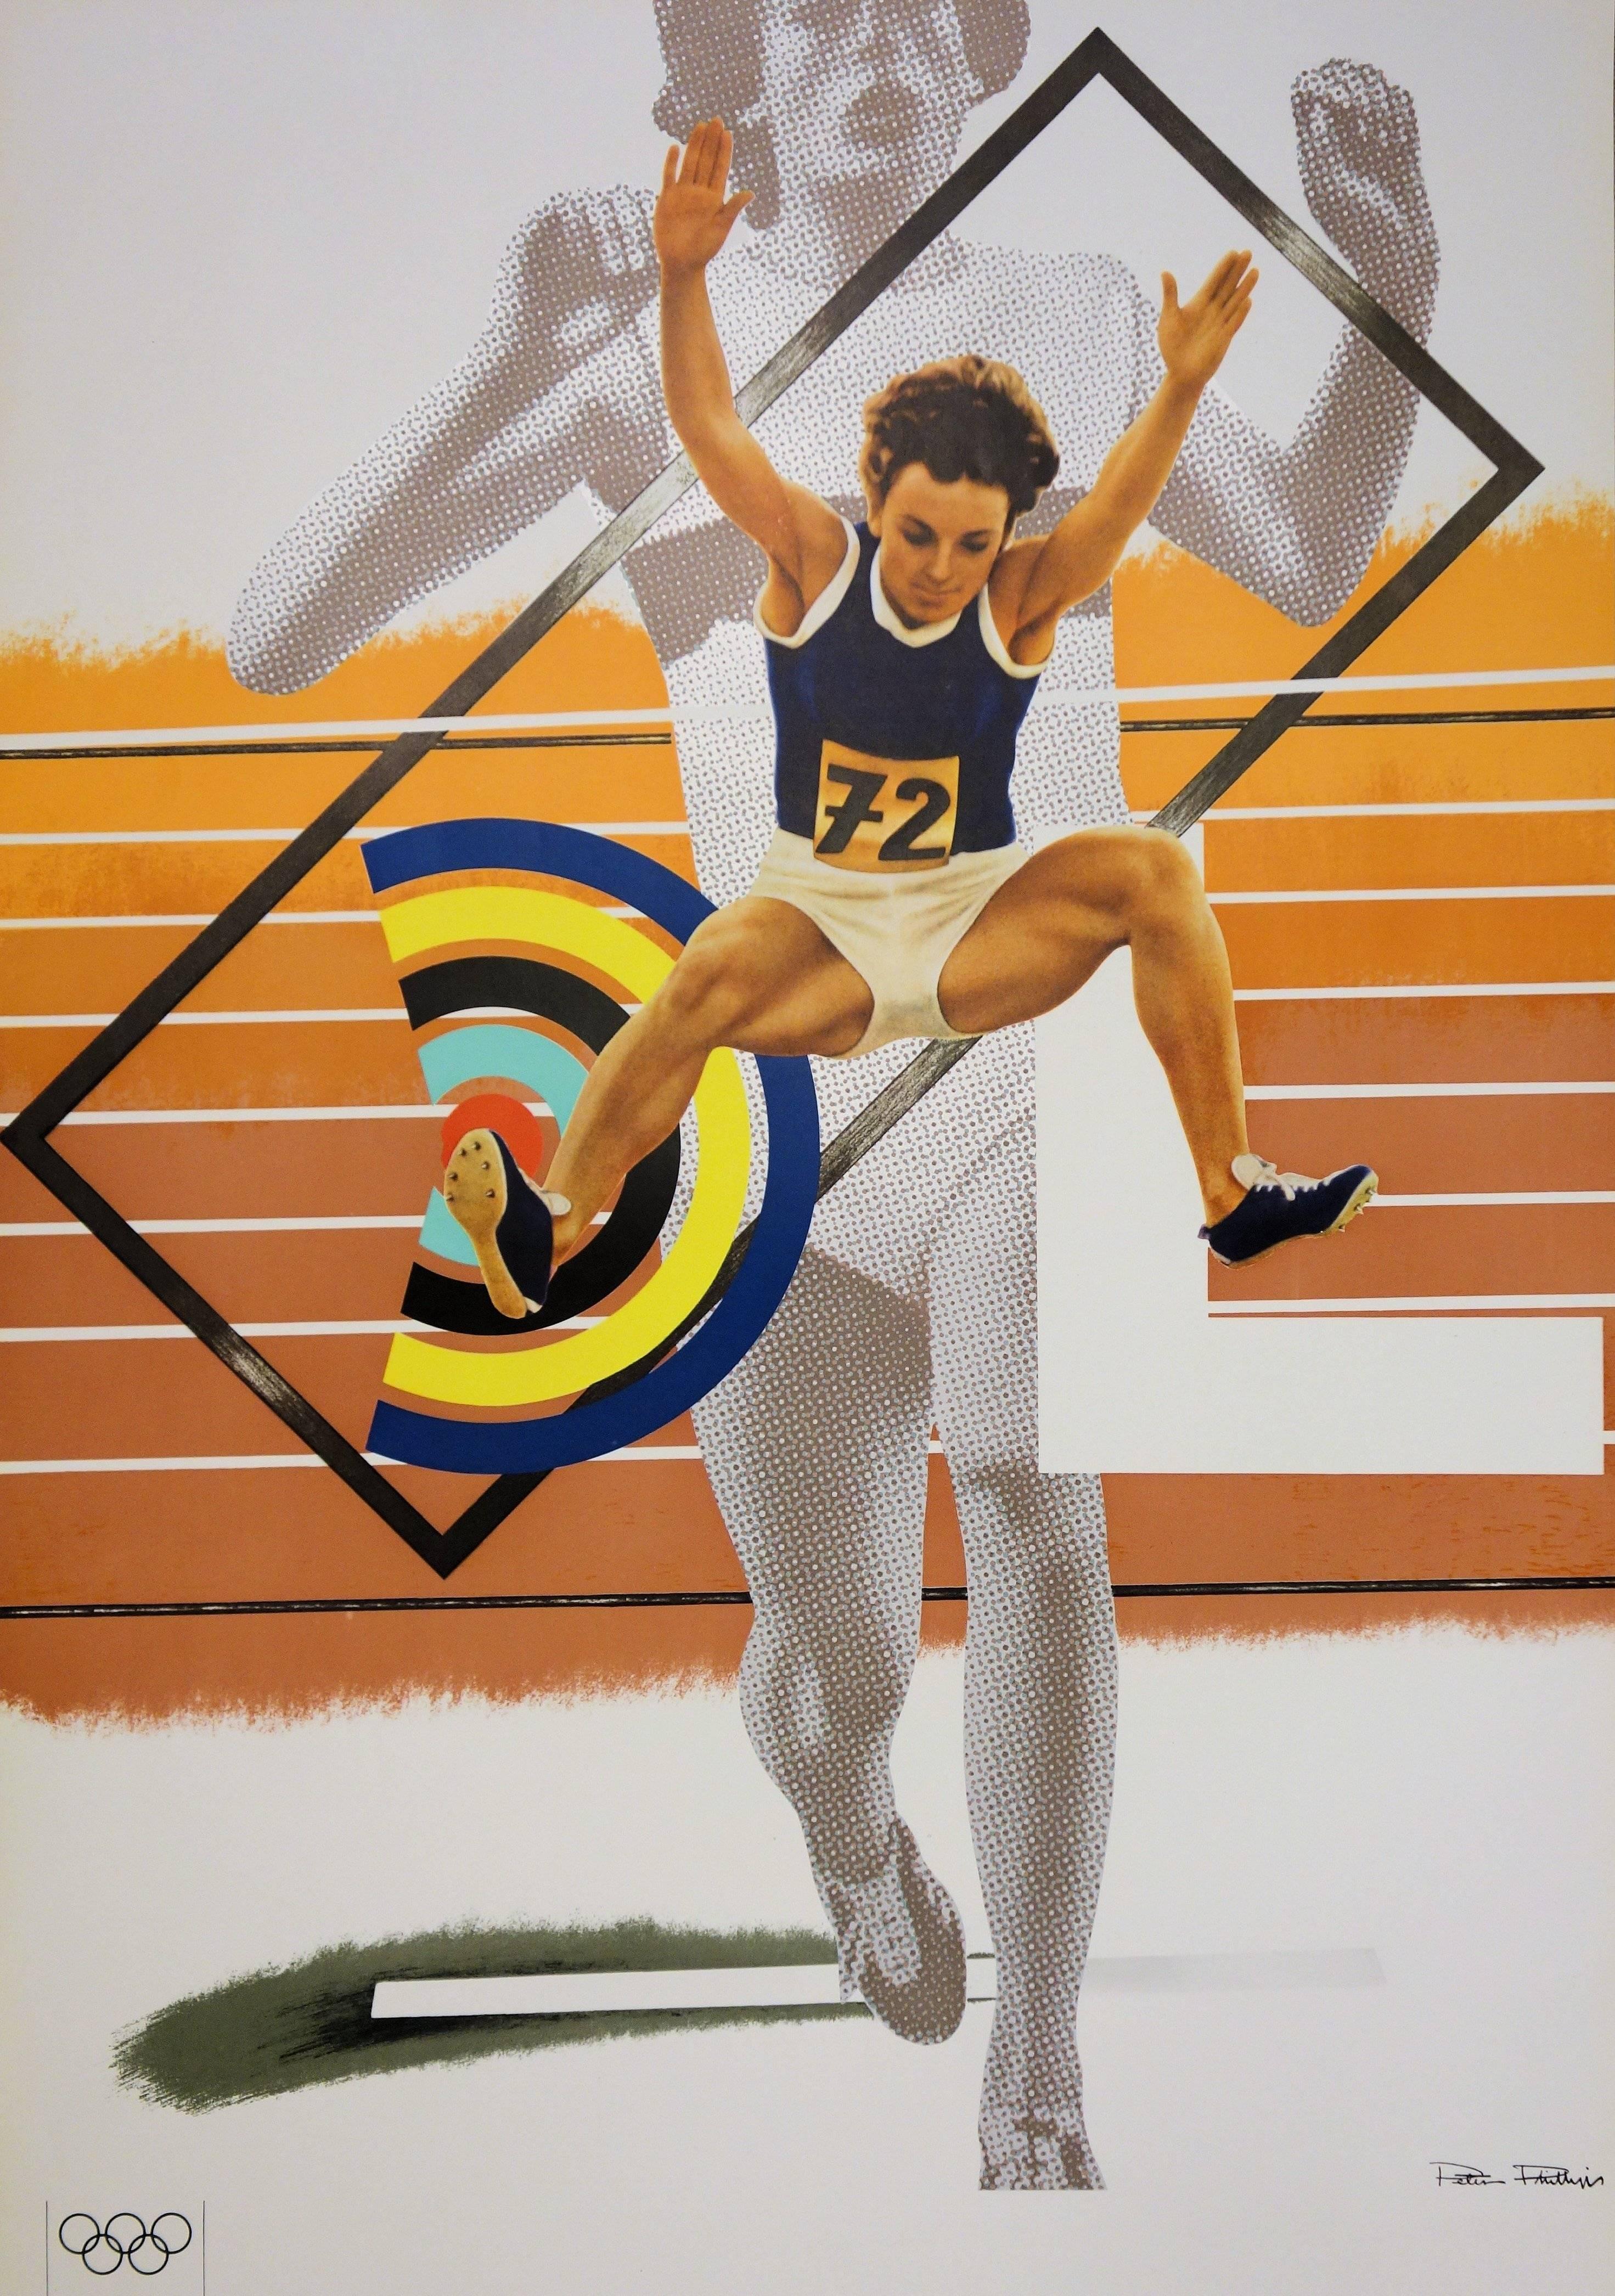 Athletisme : plus haut, plus fort, plus fort - Lithographie (Jeux olympiques de Munich 1972) - Moderne Print par Peter Phillips